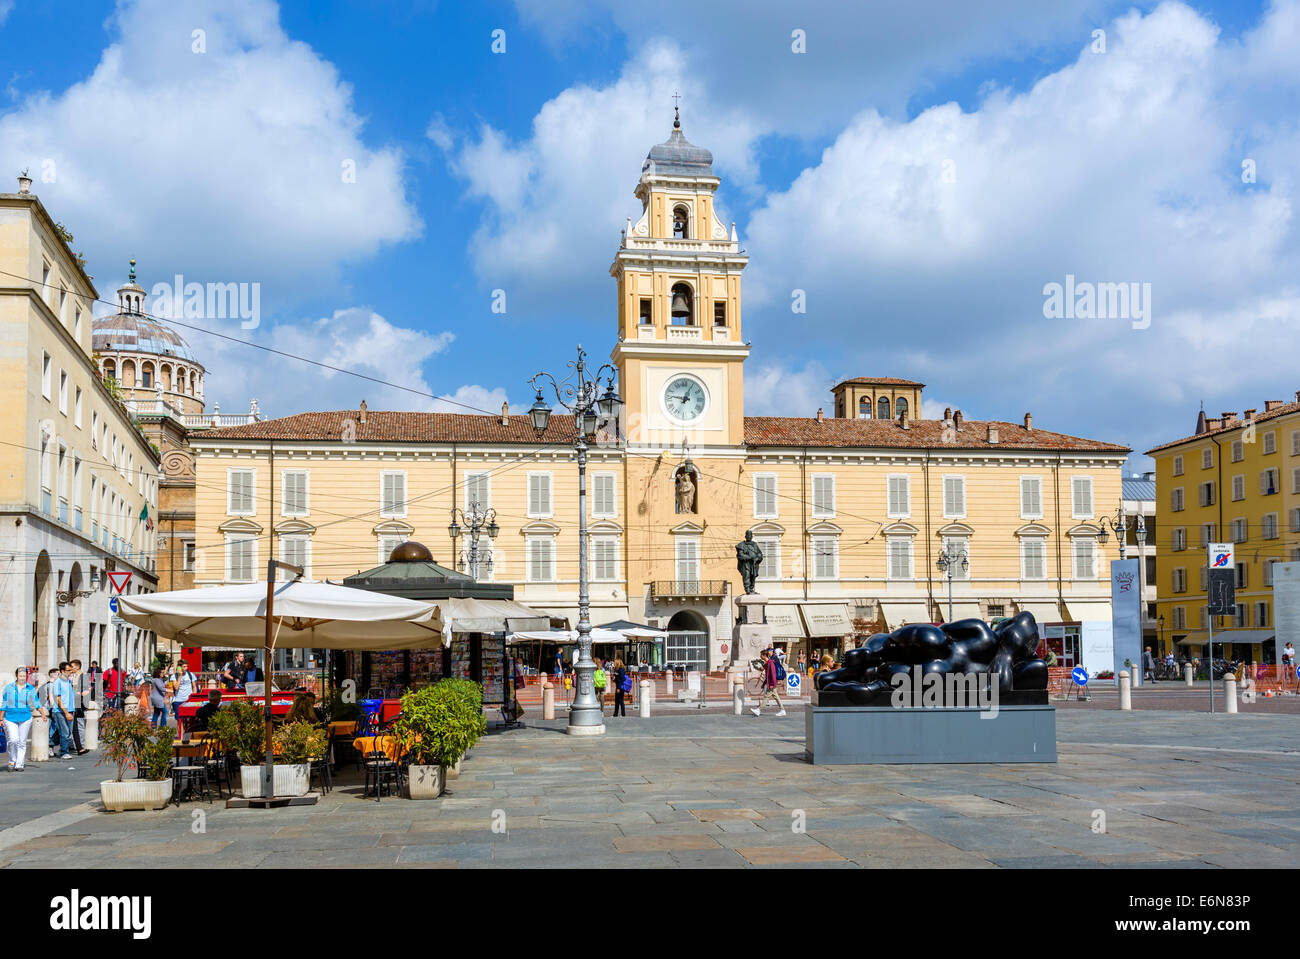 Der Palazzo del Governatore, Piazza Giuseppe Garibaldi, Parma, Emilia Romagna, Italien Stockfoto